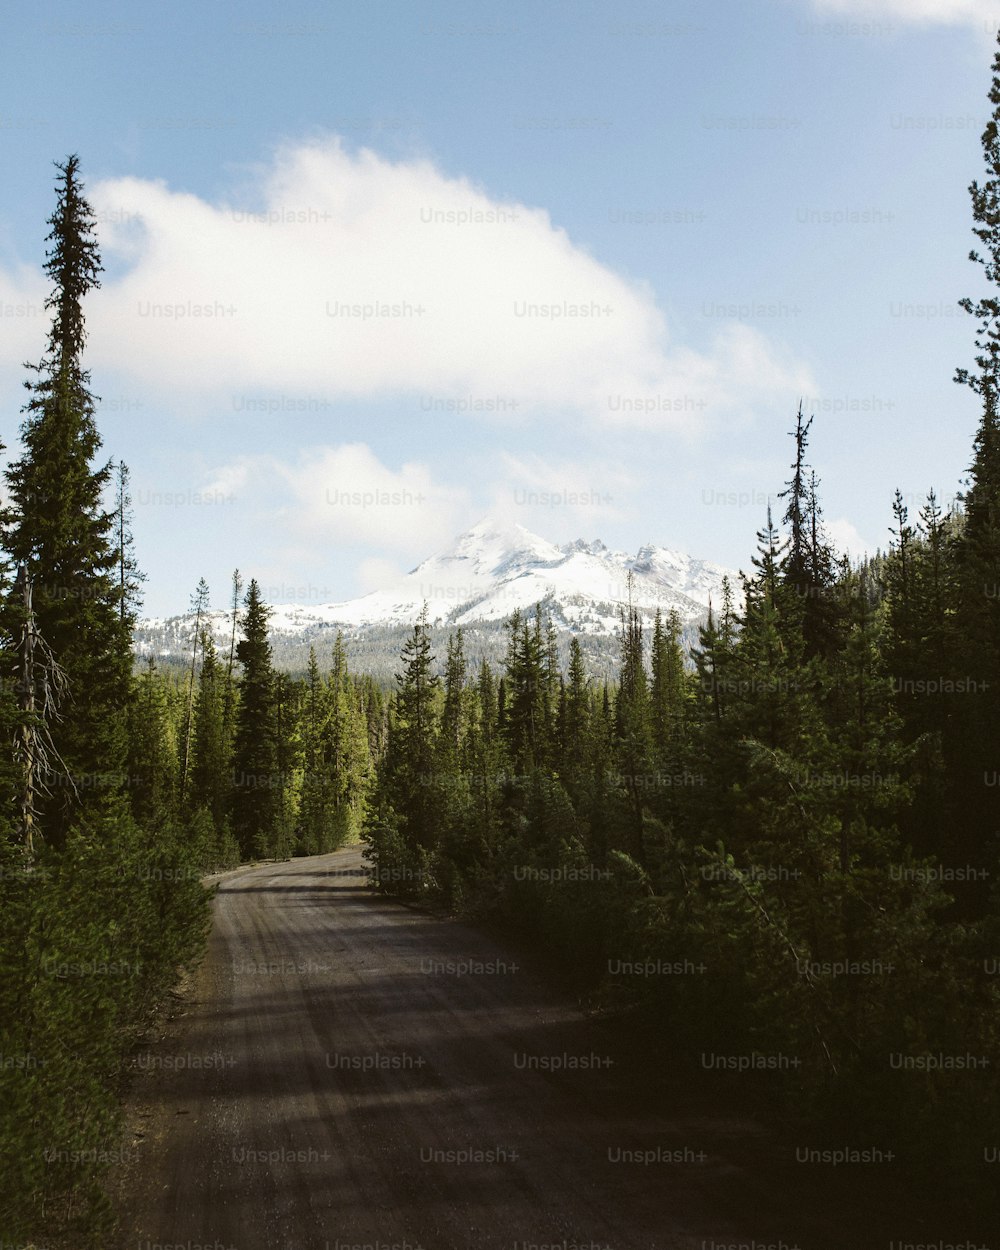 Una strada sterrata circondata da alberi con una montagna innevata sullo sfondo